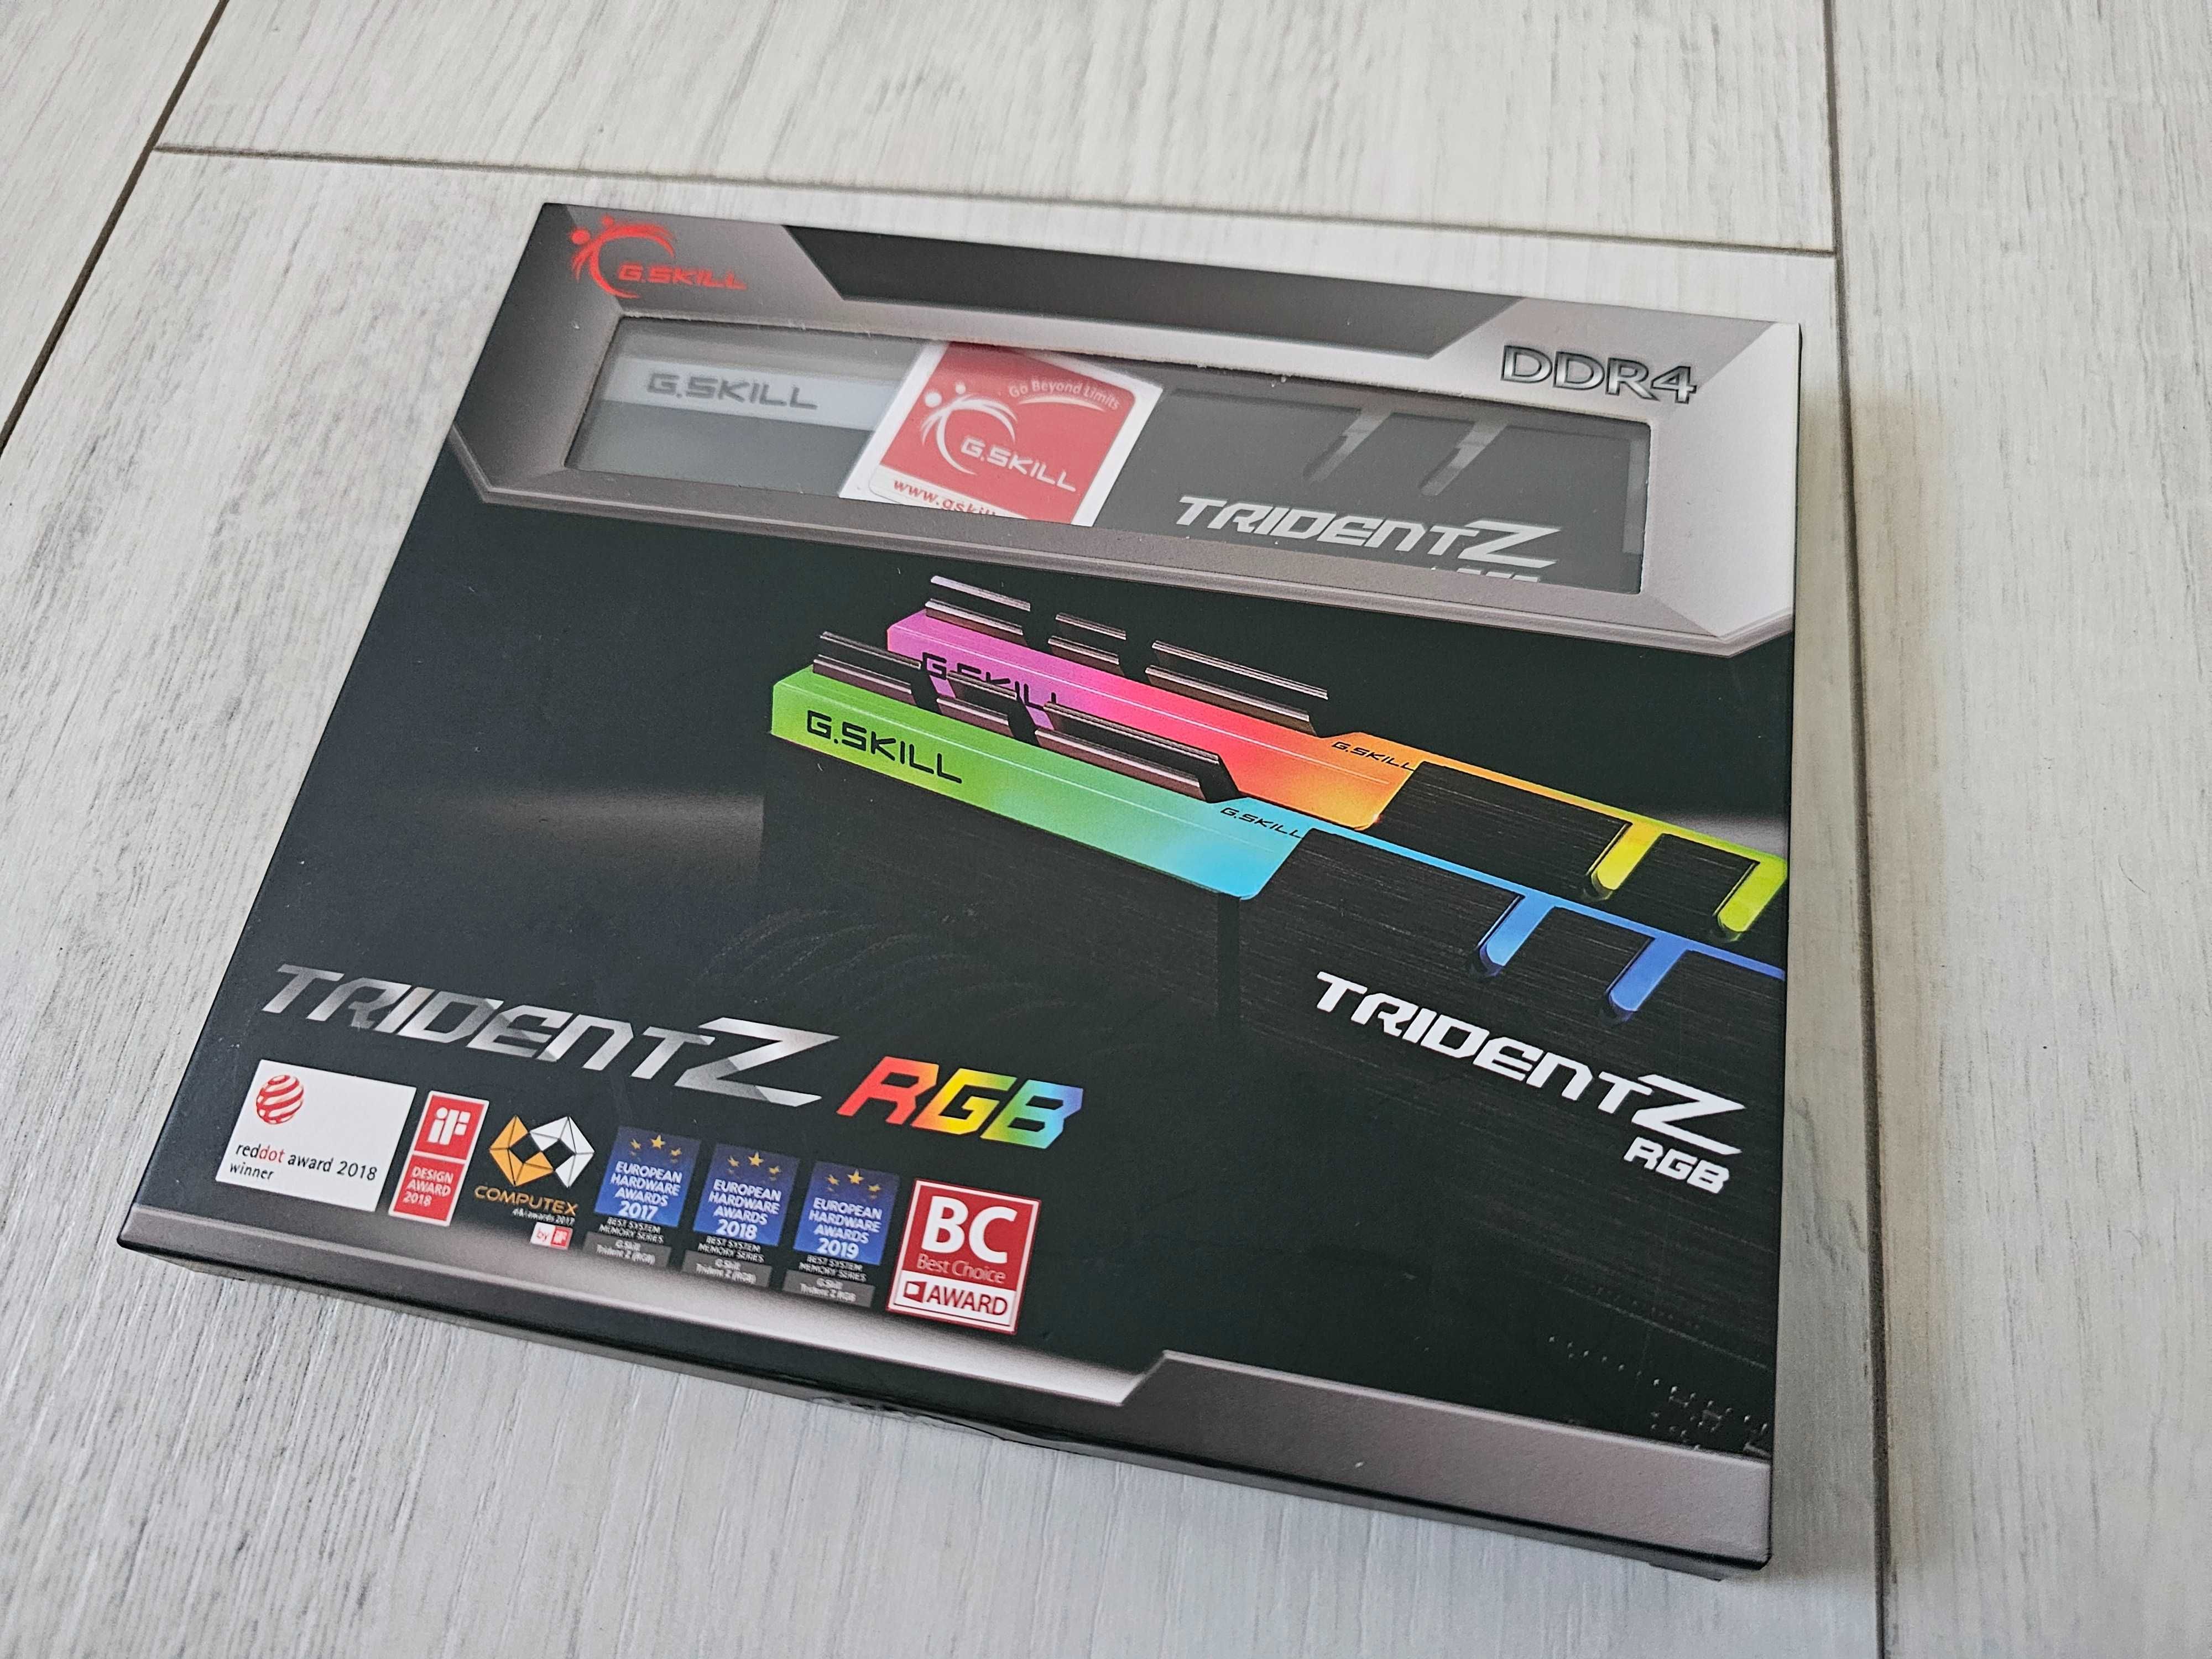 Ddr4 G.Skill TridentZ RGB 16 GB